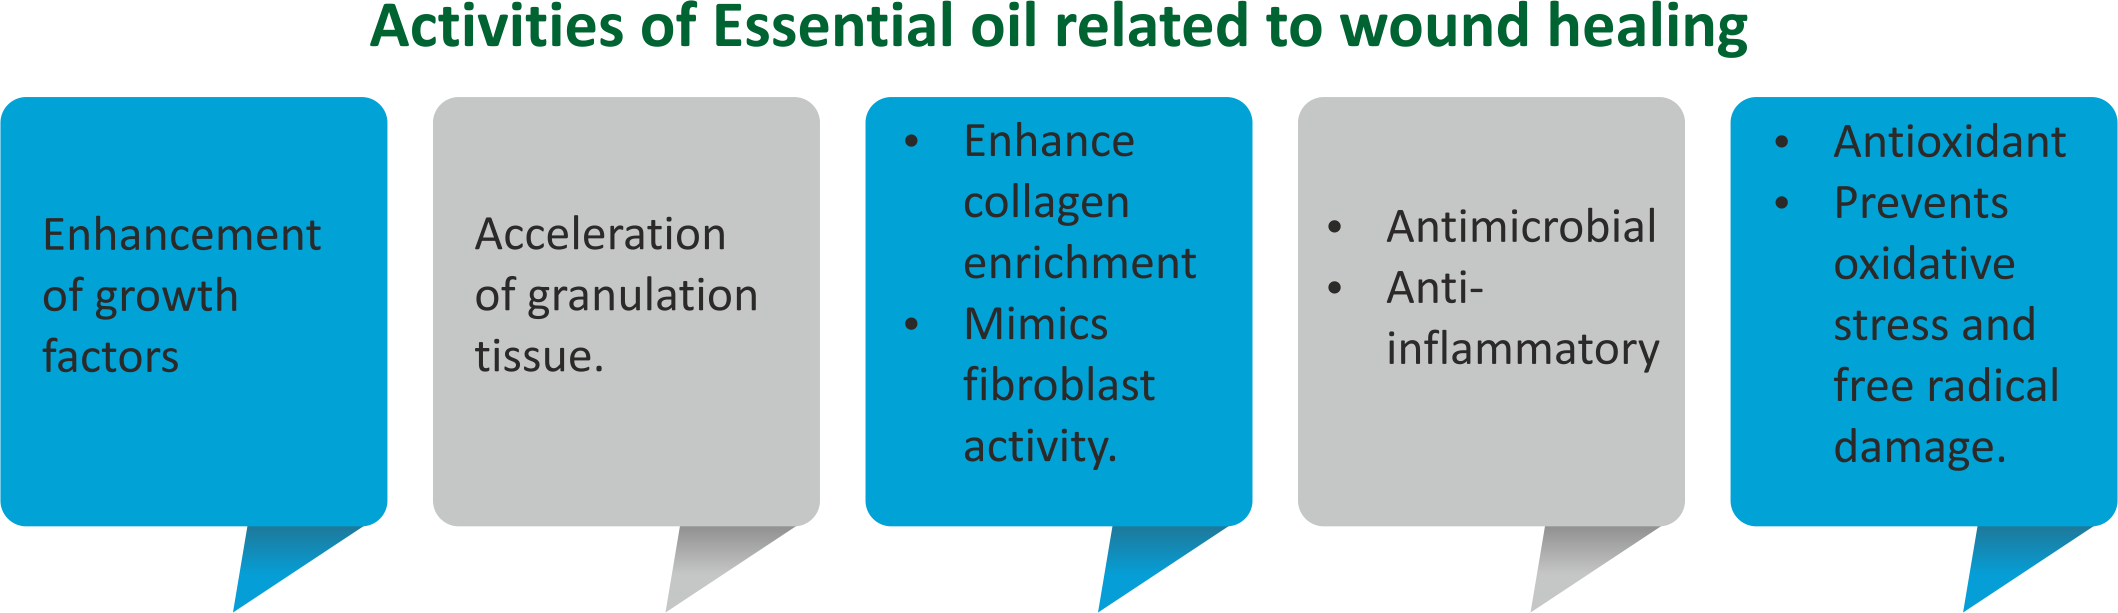 Activities of Essential Oil